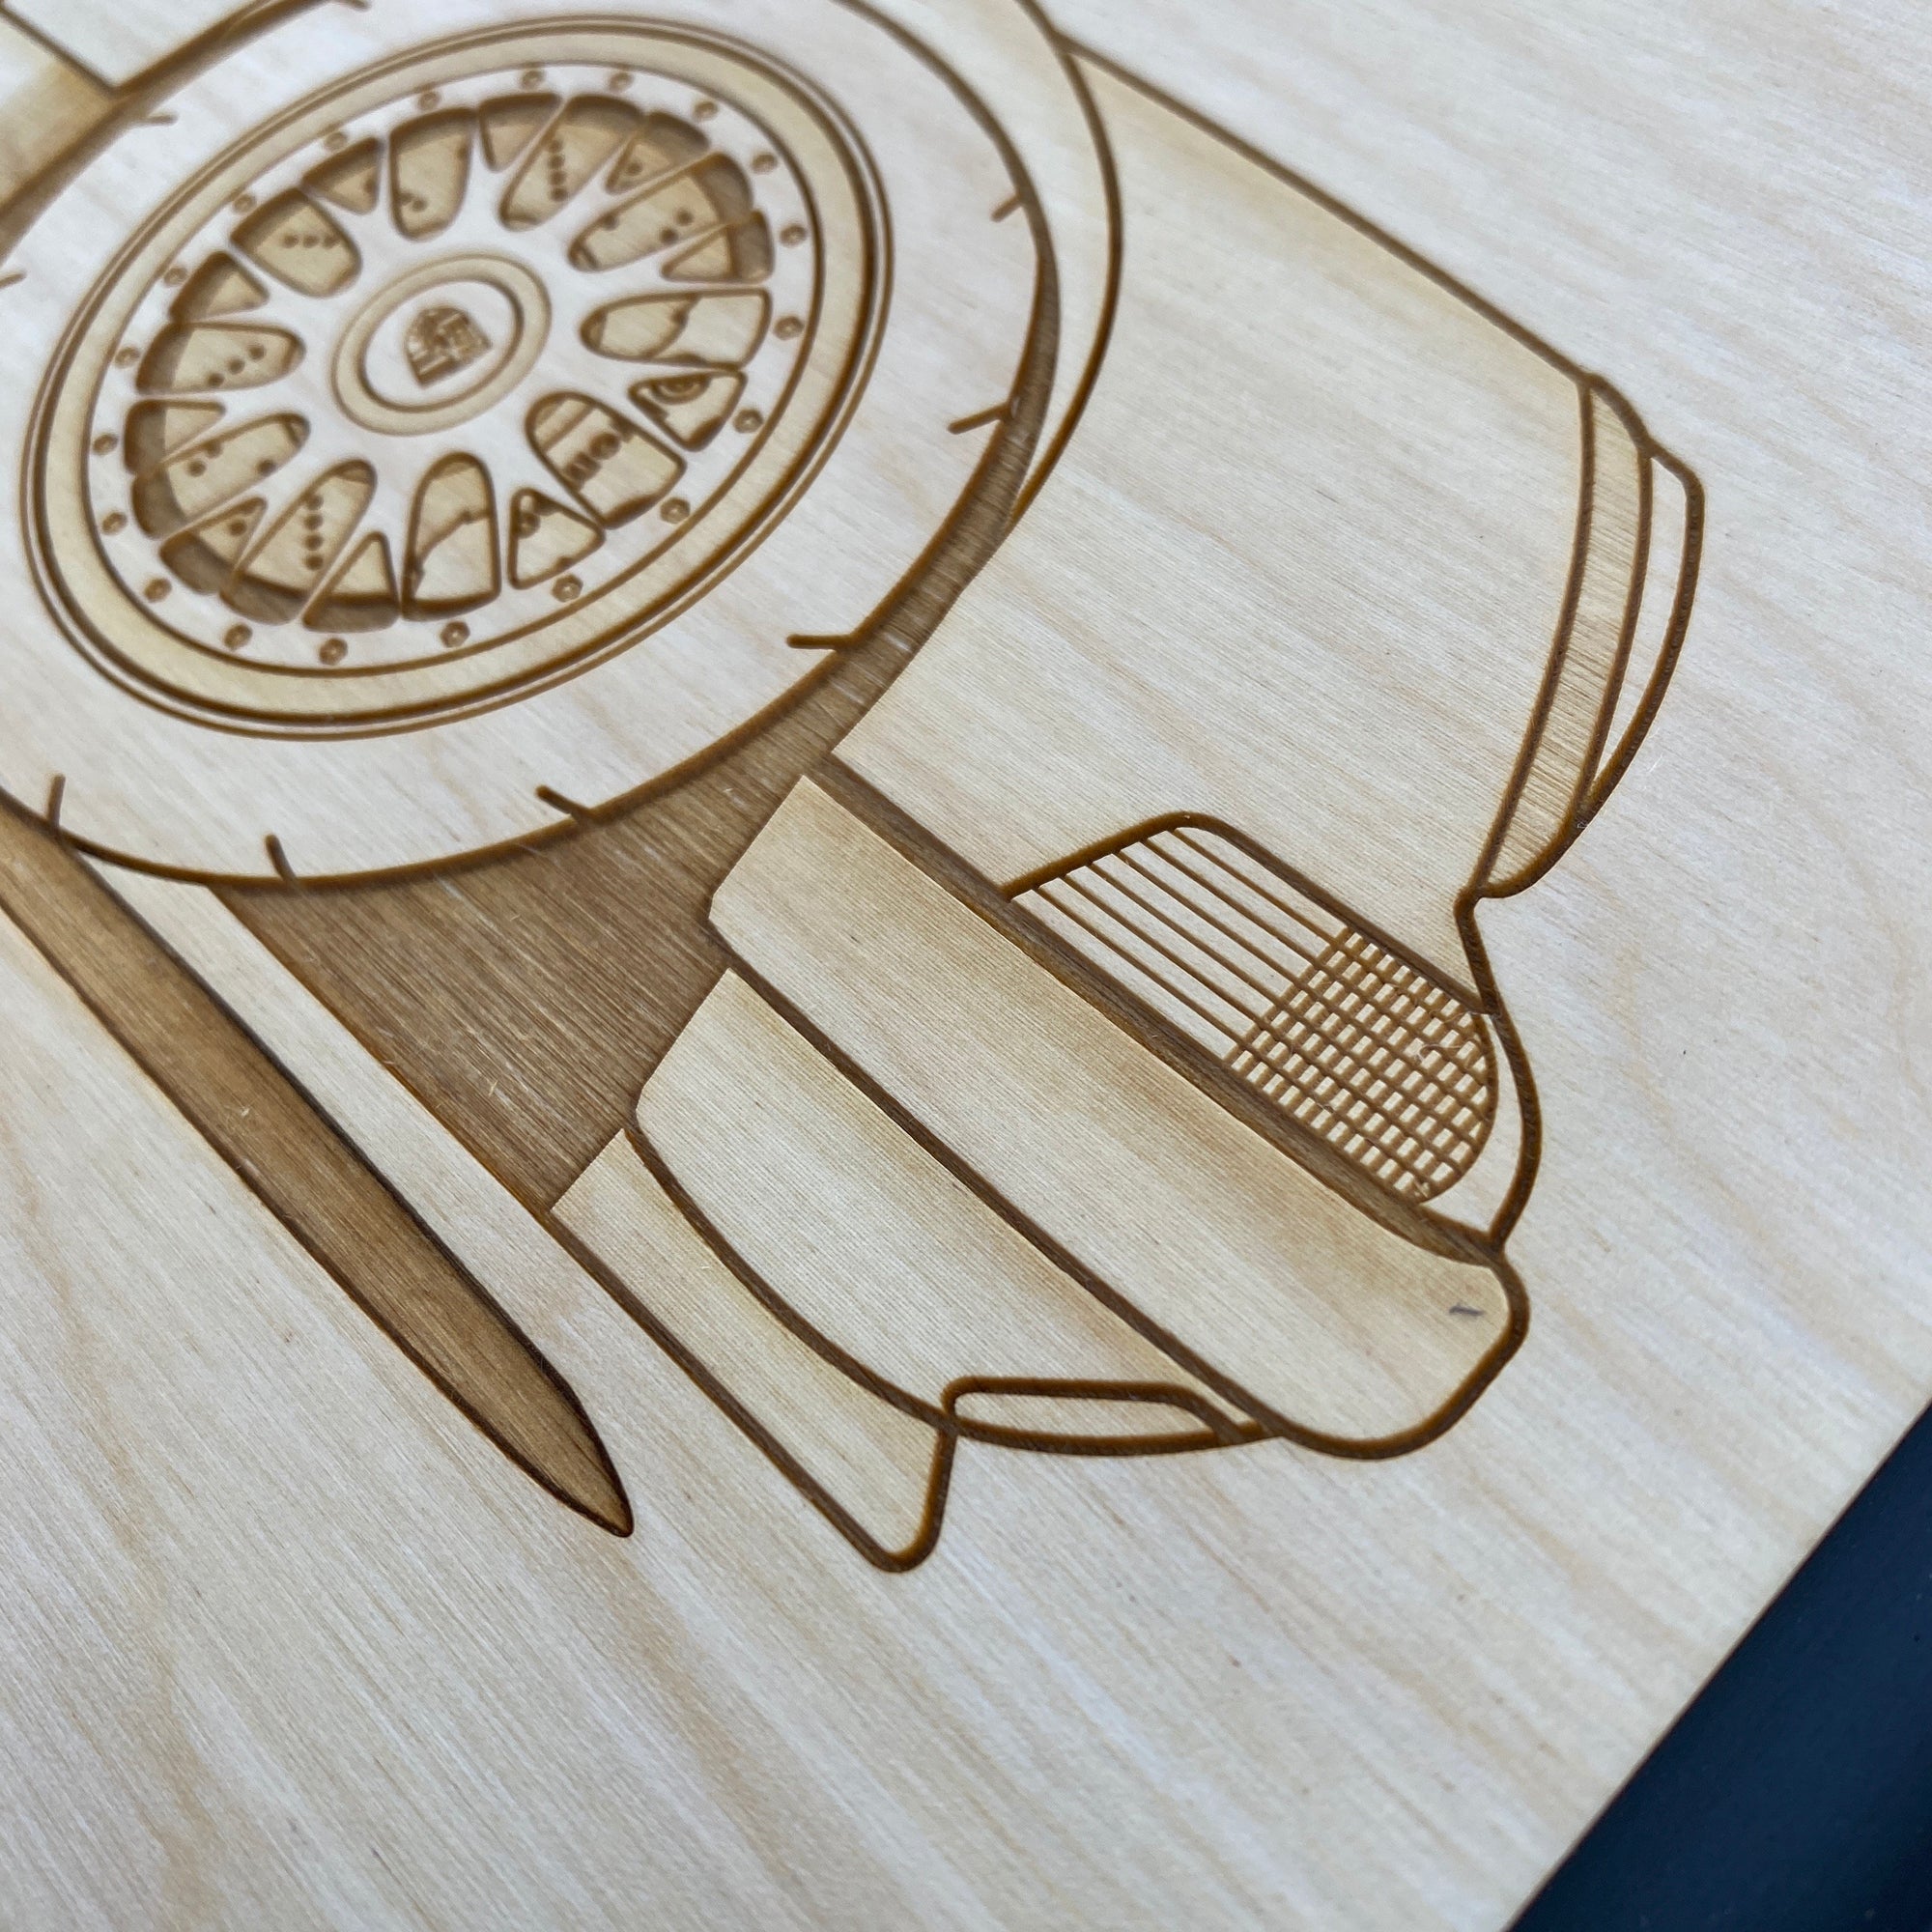 Star Wars Coasters, engraved wall art, custom engraved wood